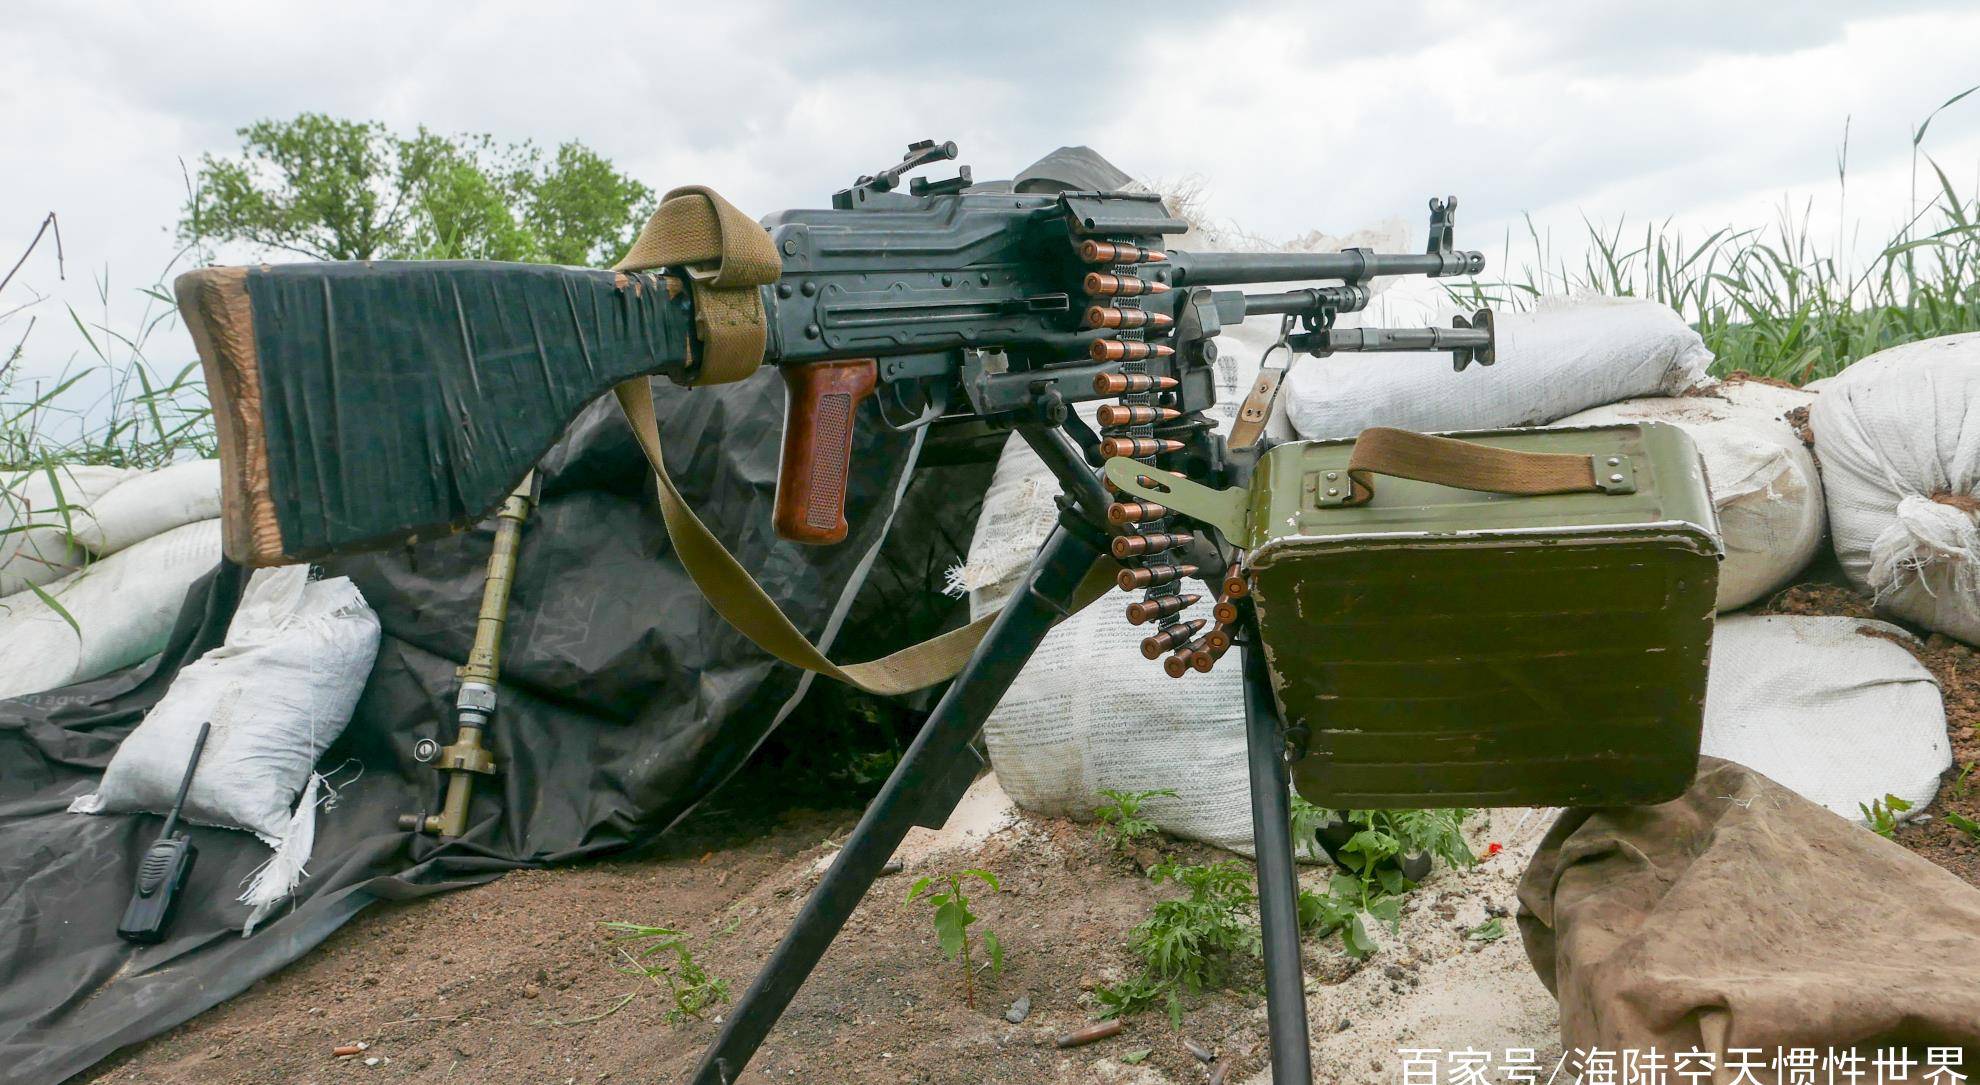 乌克兰使用15挺机枪,打出了1.2万发子弹,疯狂扫射亲俄